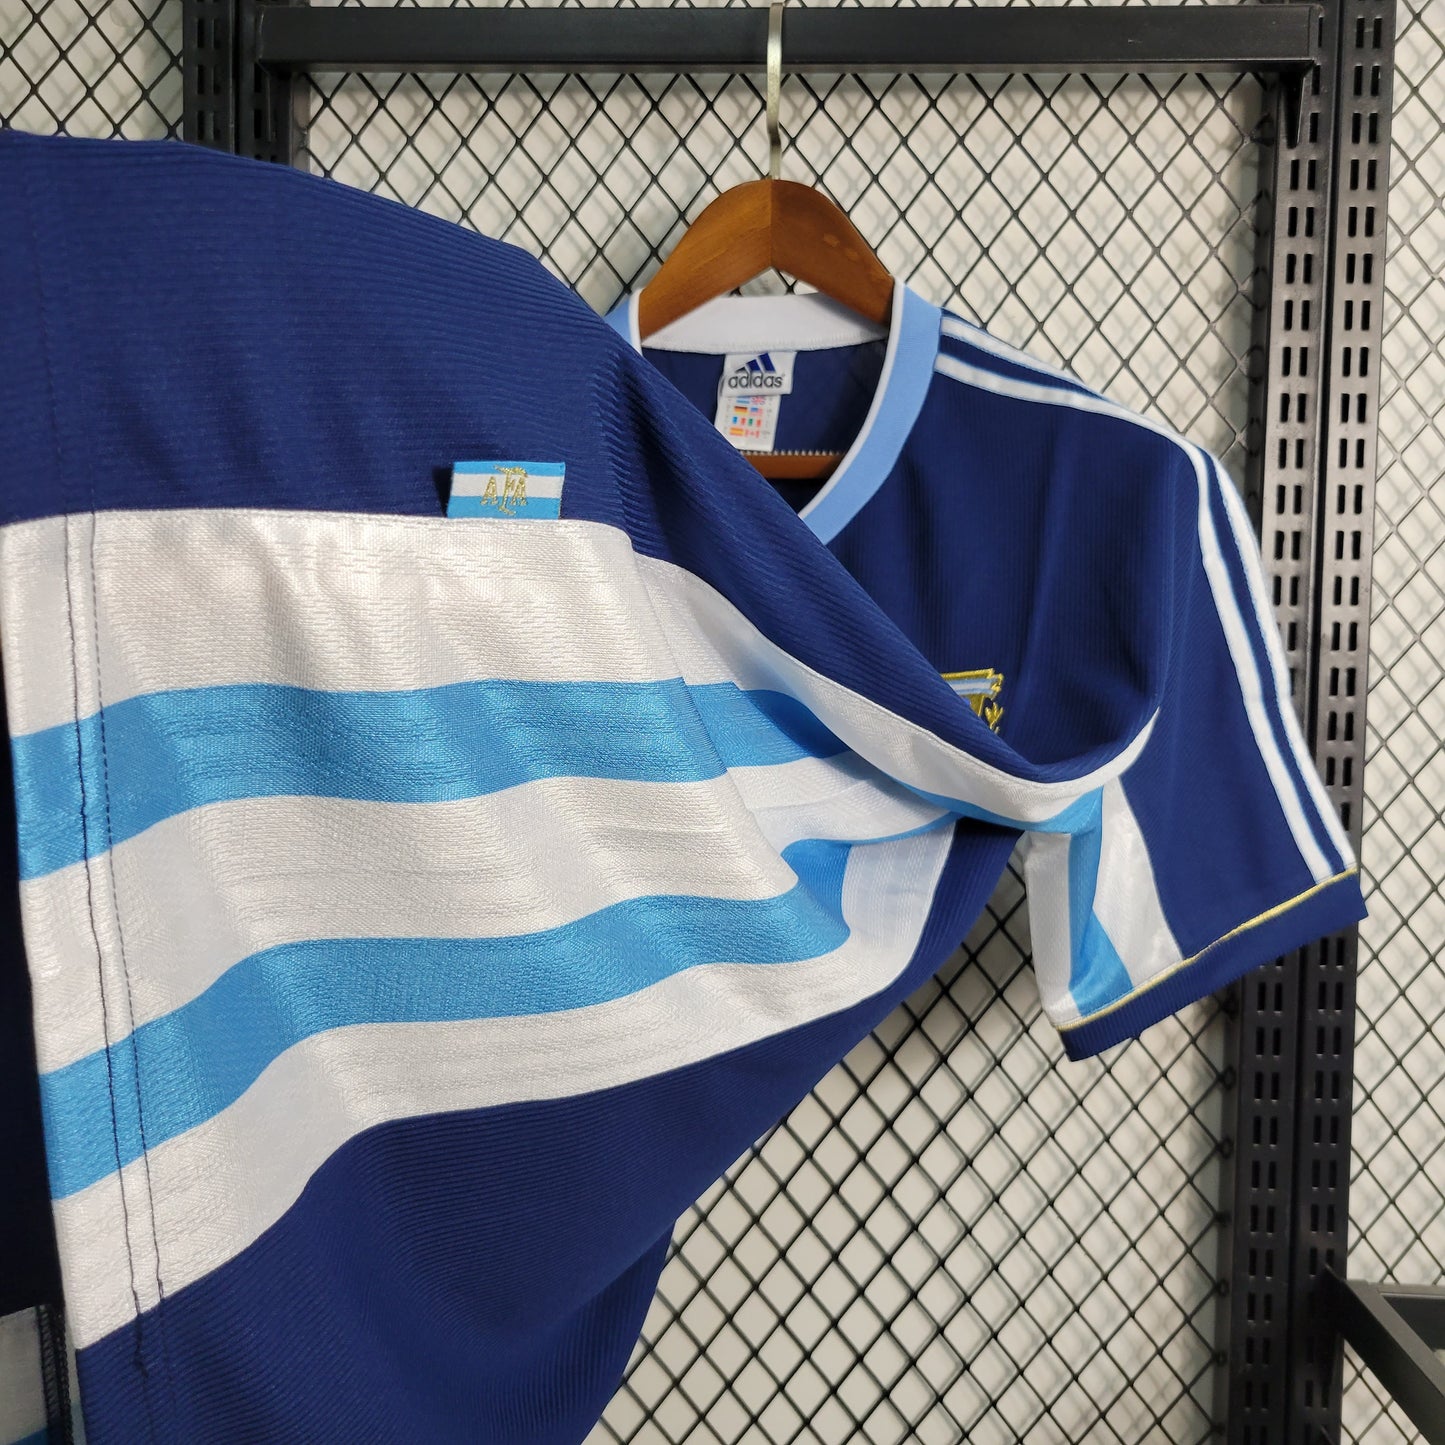 Camisa Retrô Argentina Away 1998